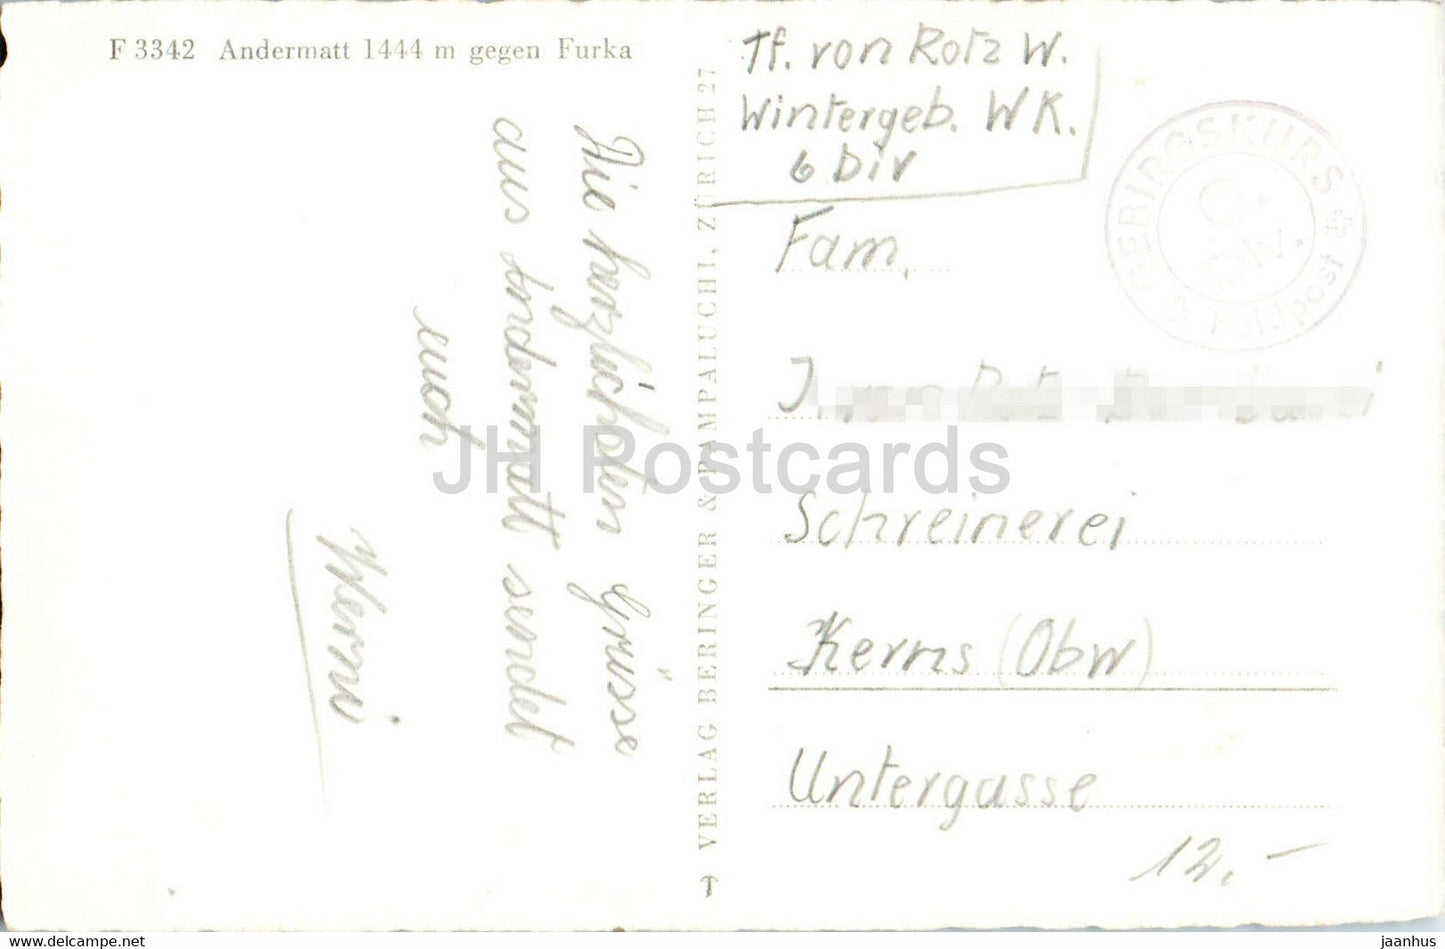 Andermatt 1444 m gegen Furka - F3342 - Feldpost - military mail - old postcard - Switzerland - used